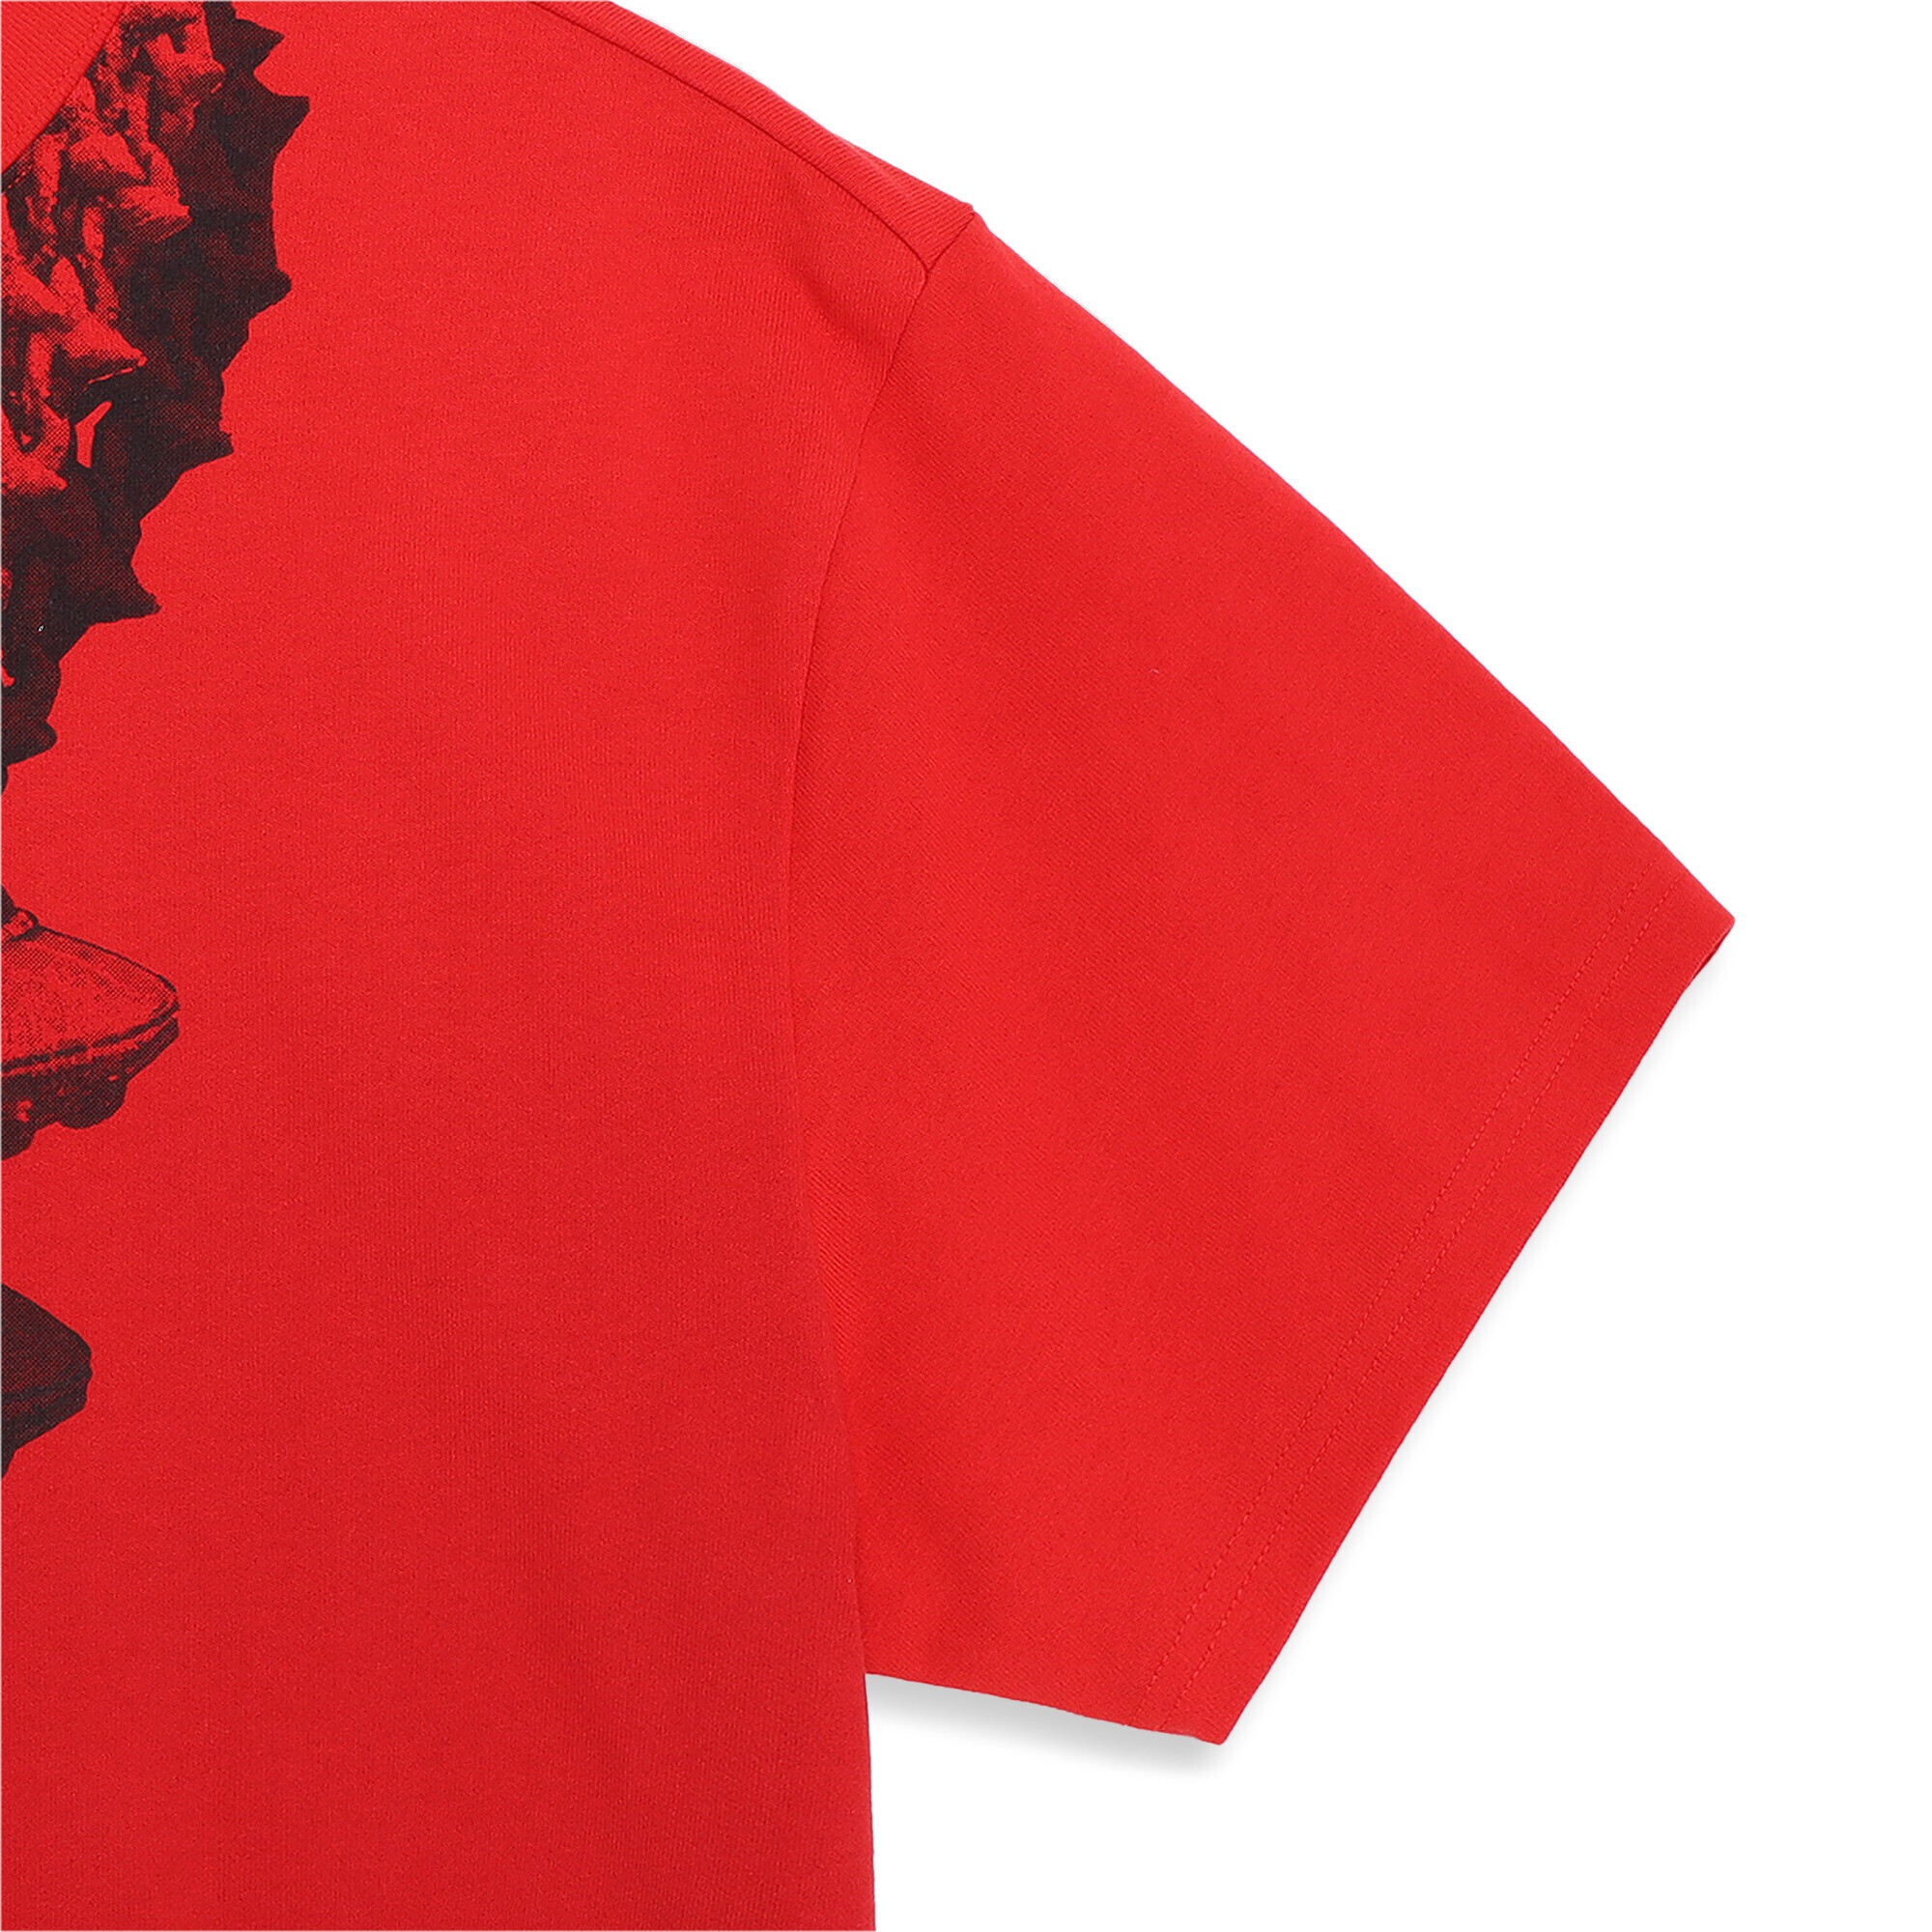 Men's PUMA X LAFRANCÃ T-Shirt In Red, Size Medium